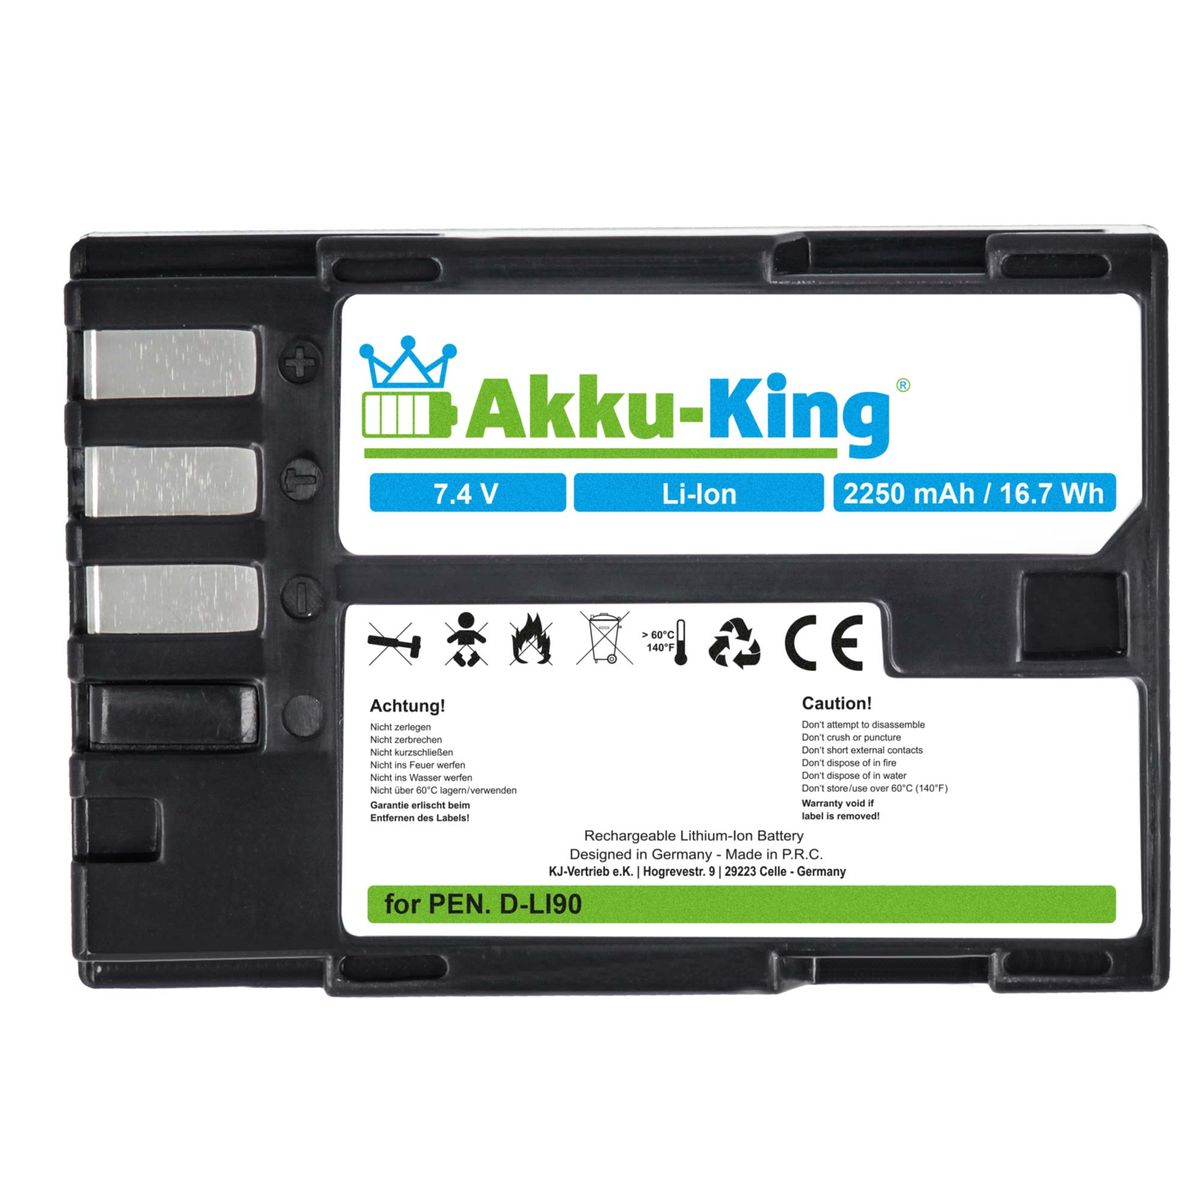 Volt, mit D-Li90 Kamera-Akku, 2250mAh AKKU-KING Akku Pentax Li-Ion kompatibel 7.4